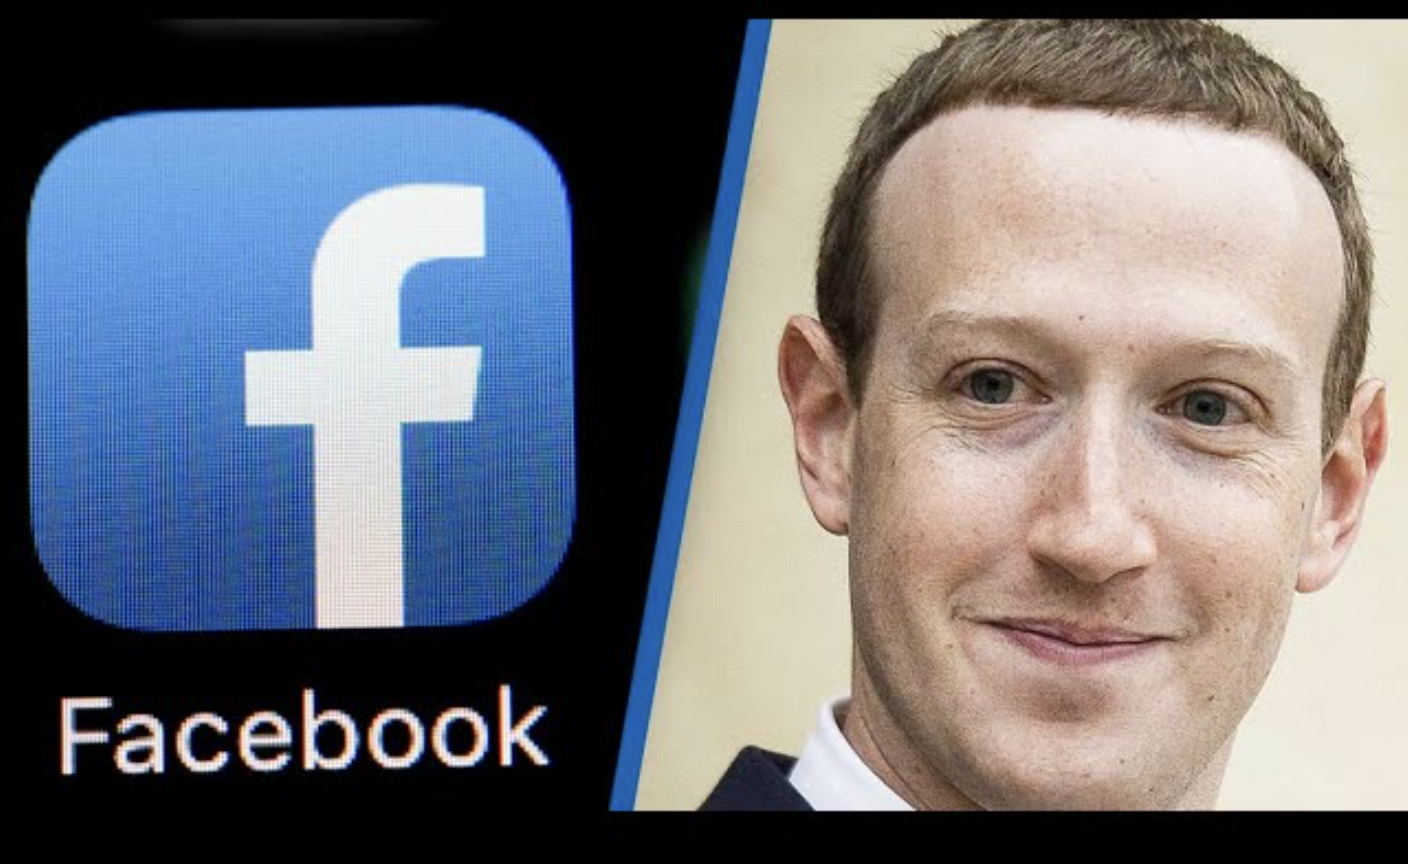 Facebook logo and CEO